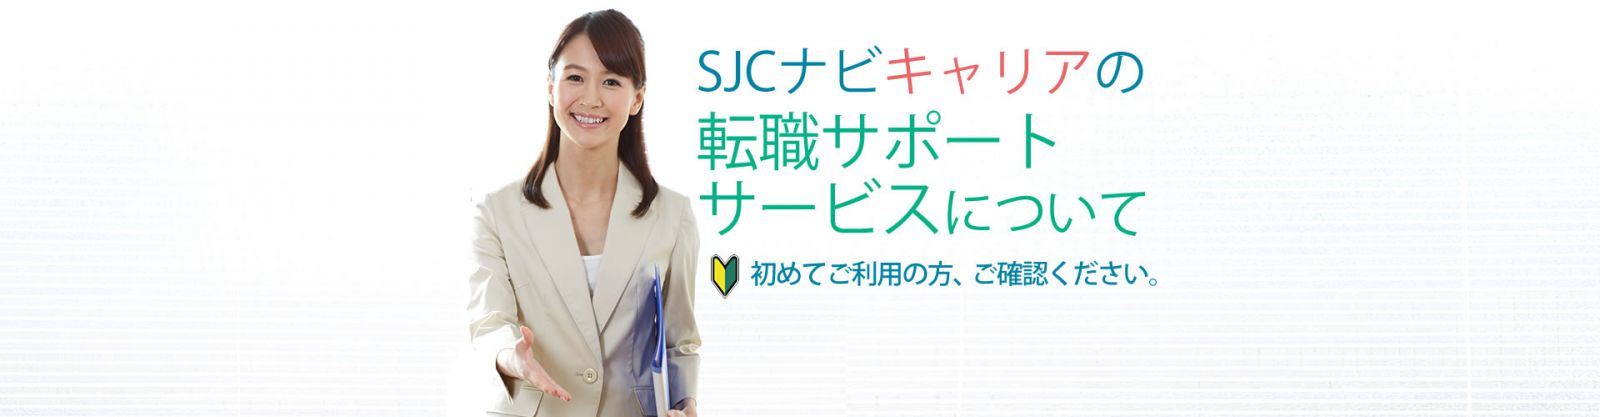 SJCナビキャリアの転職サポートサービスについて。初めてご利用の方、ご確認ください。静岡県の転職エージェント　SJCナビキャリア